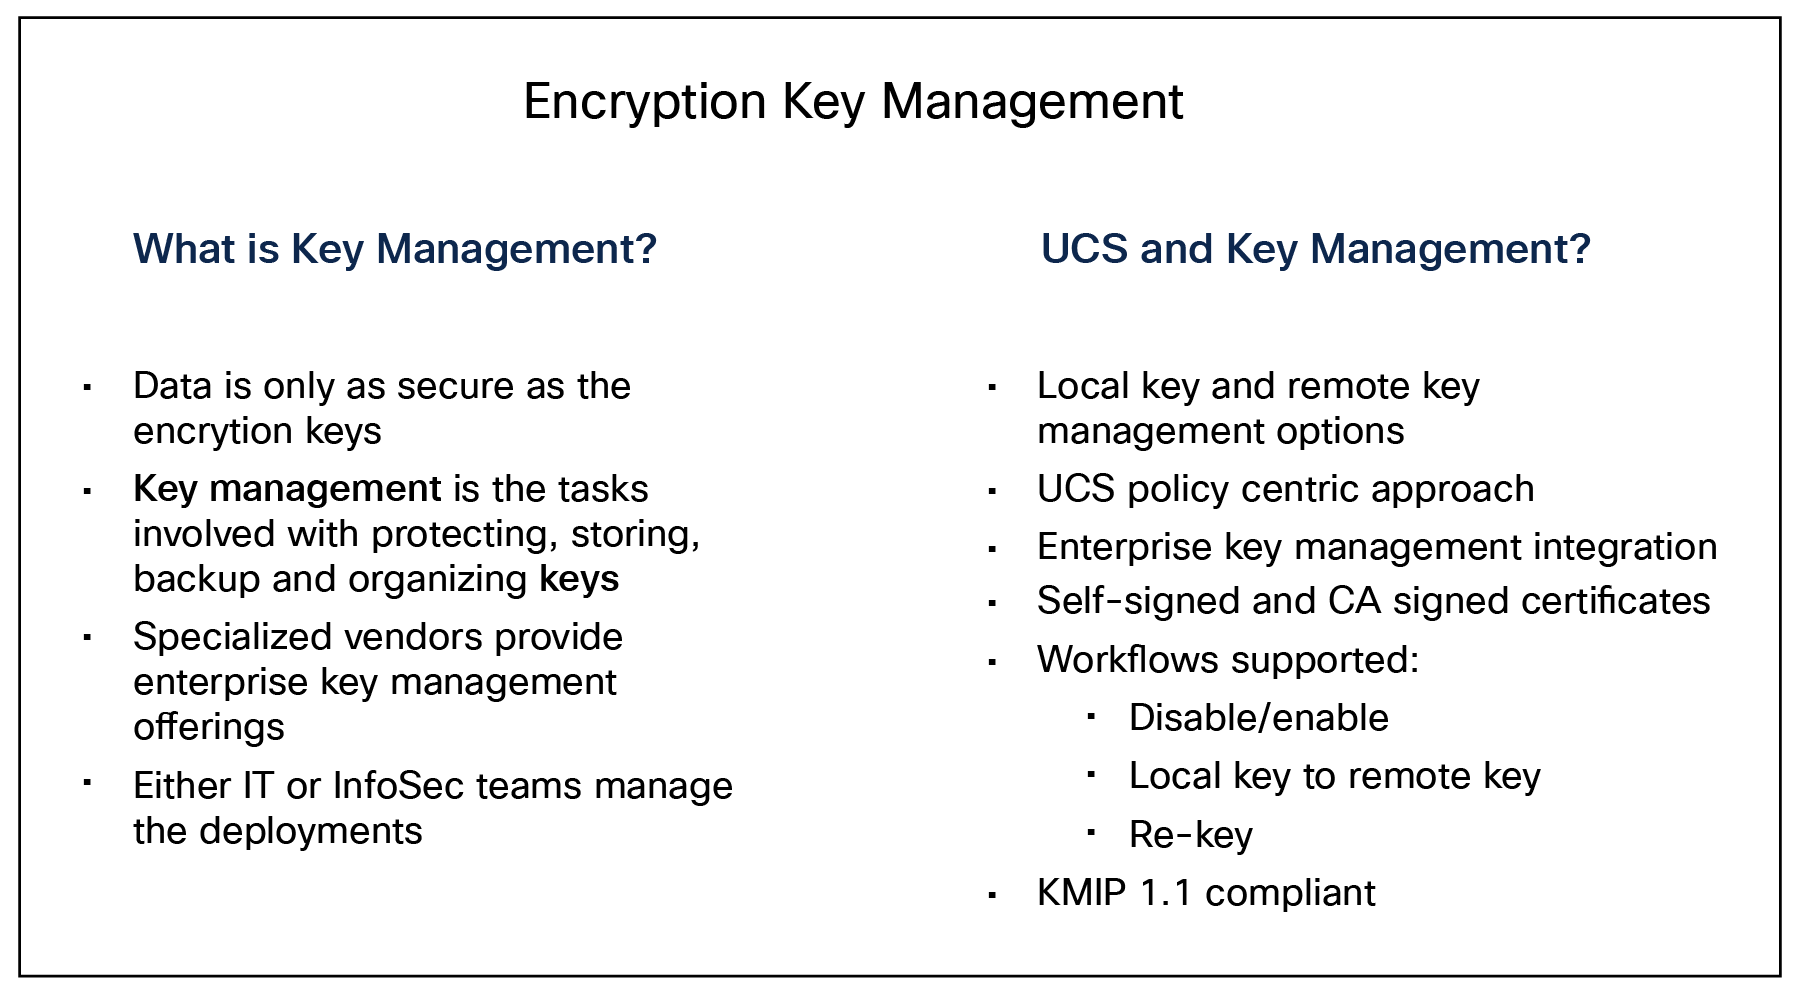 UCS key management features